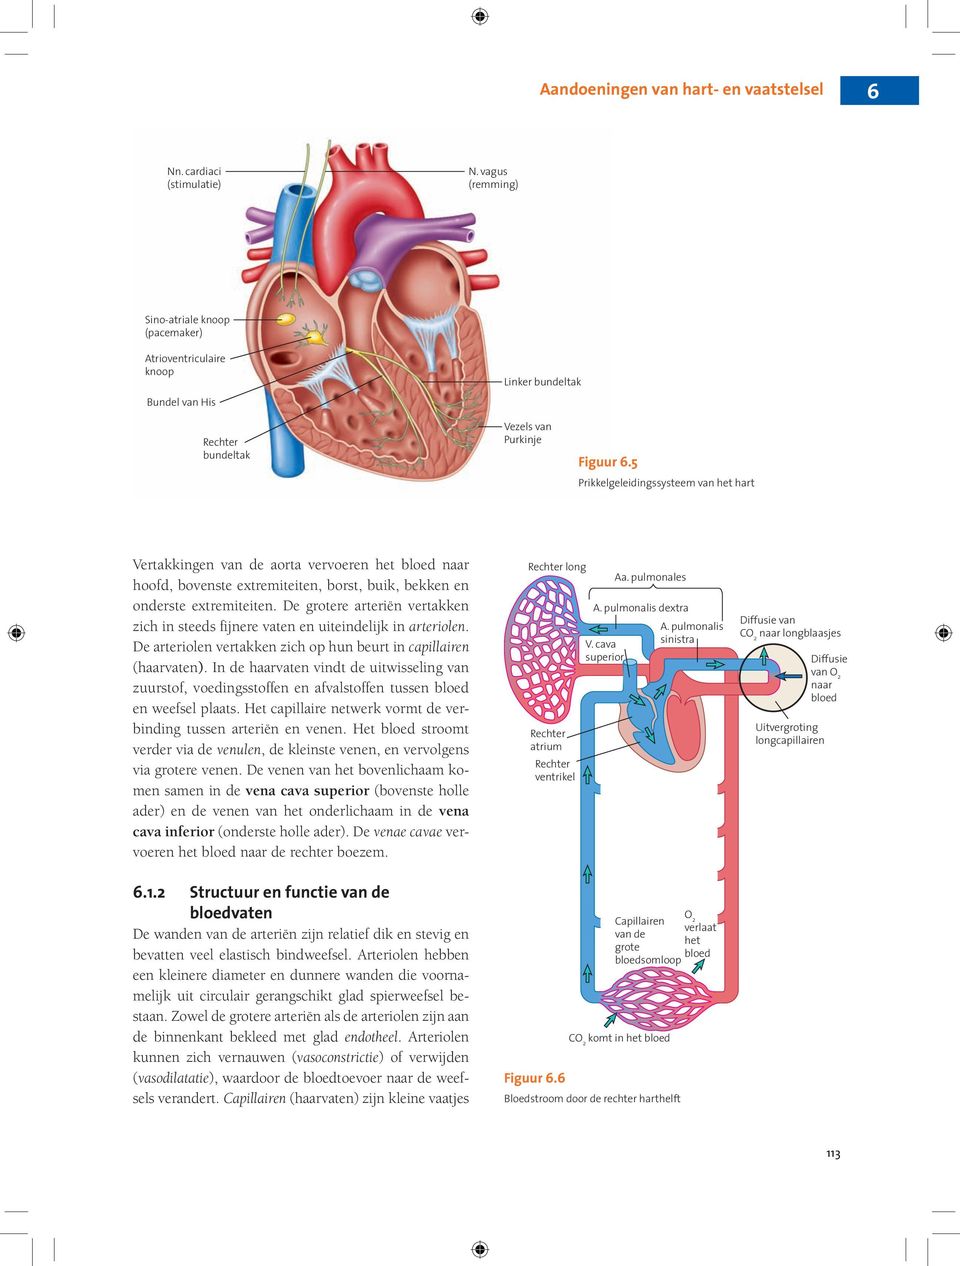 De grotere arteriën vertakken zich in steeds fijnere vaten en uiteindelijk in arteriolen. De arteriolen vertakken zich op hun beurt in capillairen (haarvaten).